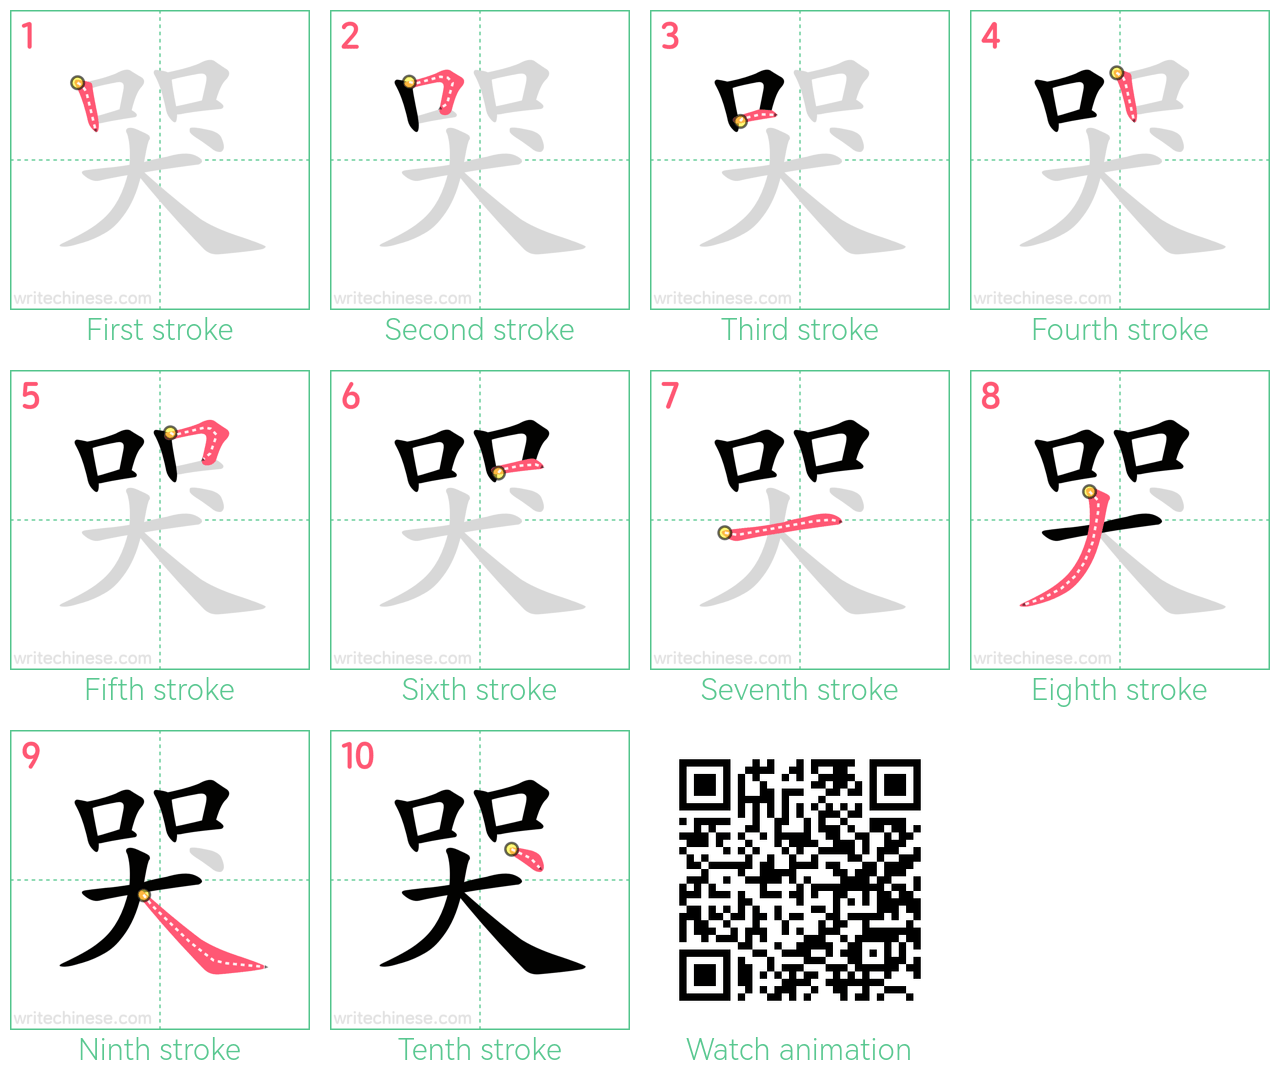 哭 step-by-step stroke order diagrams